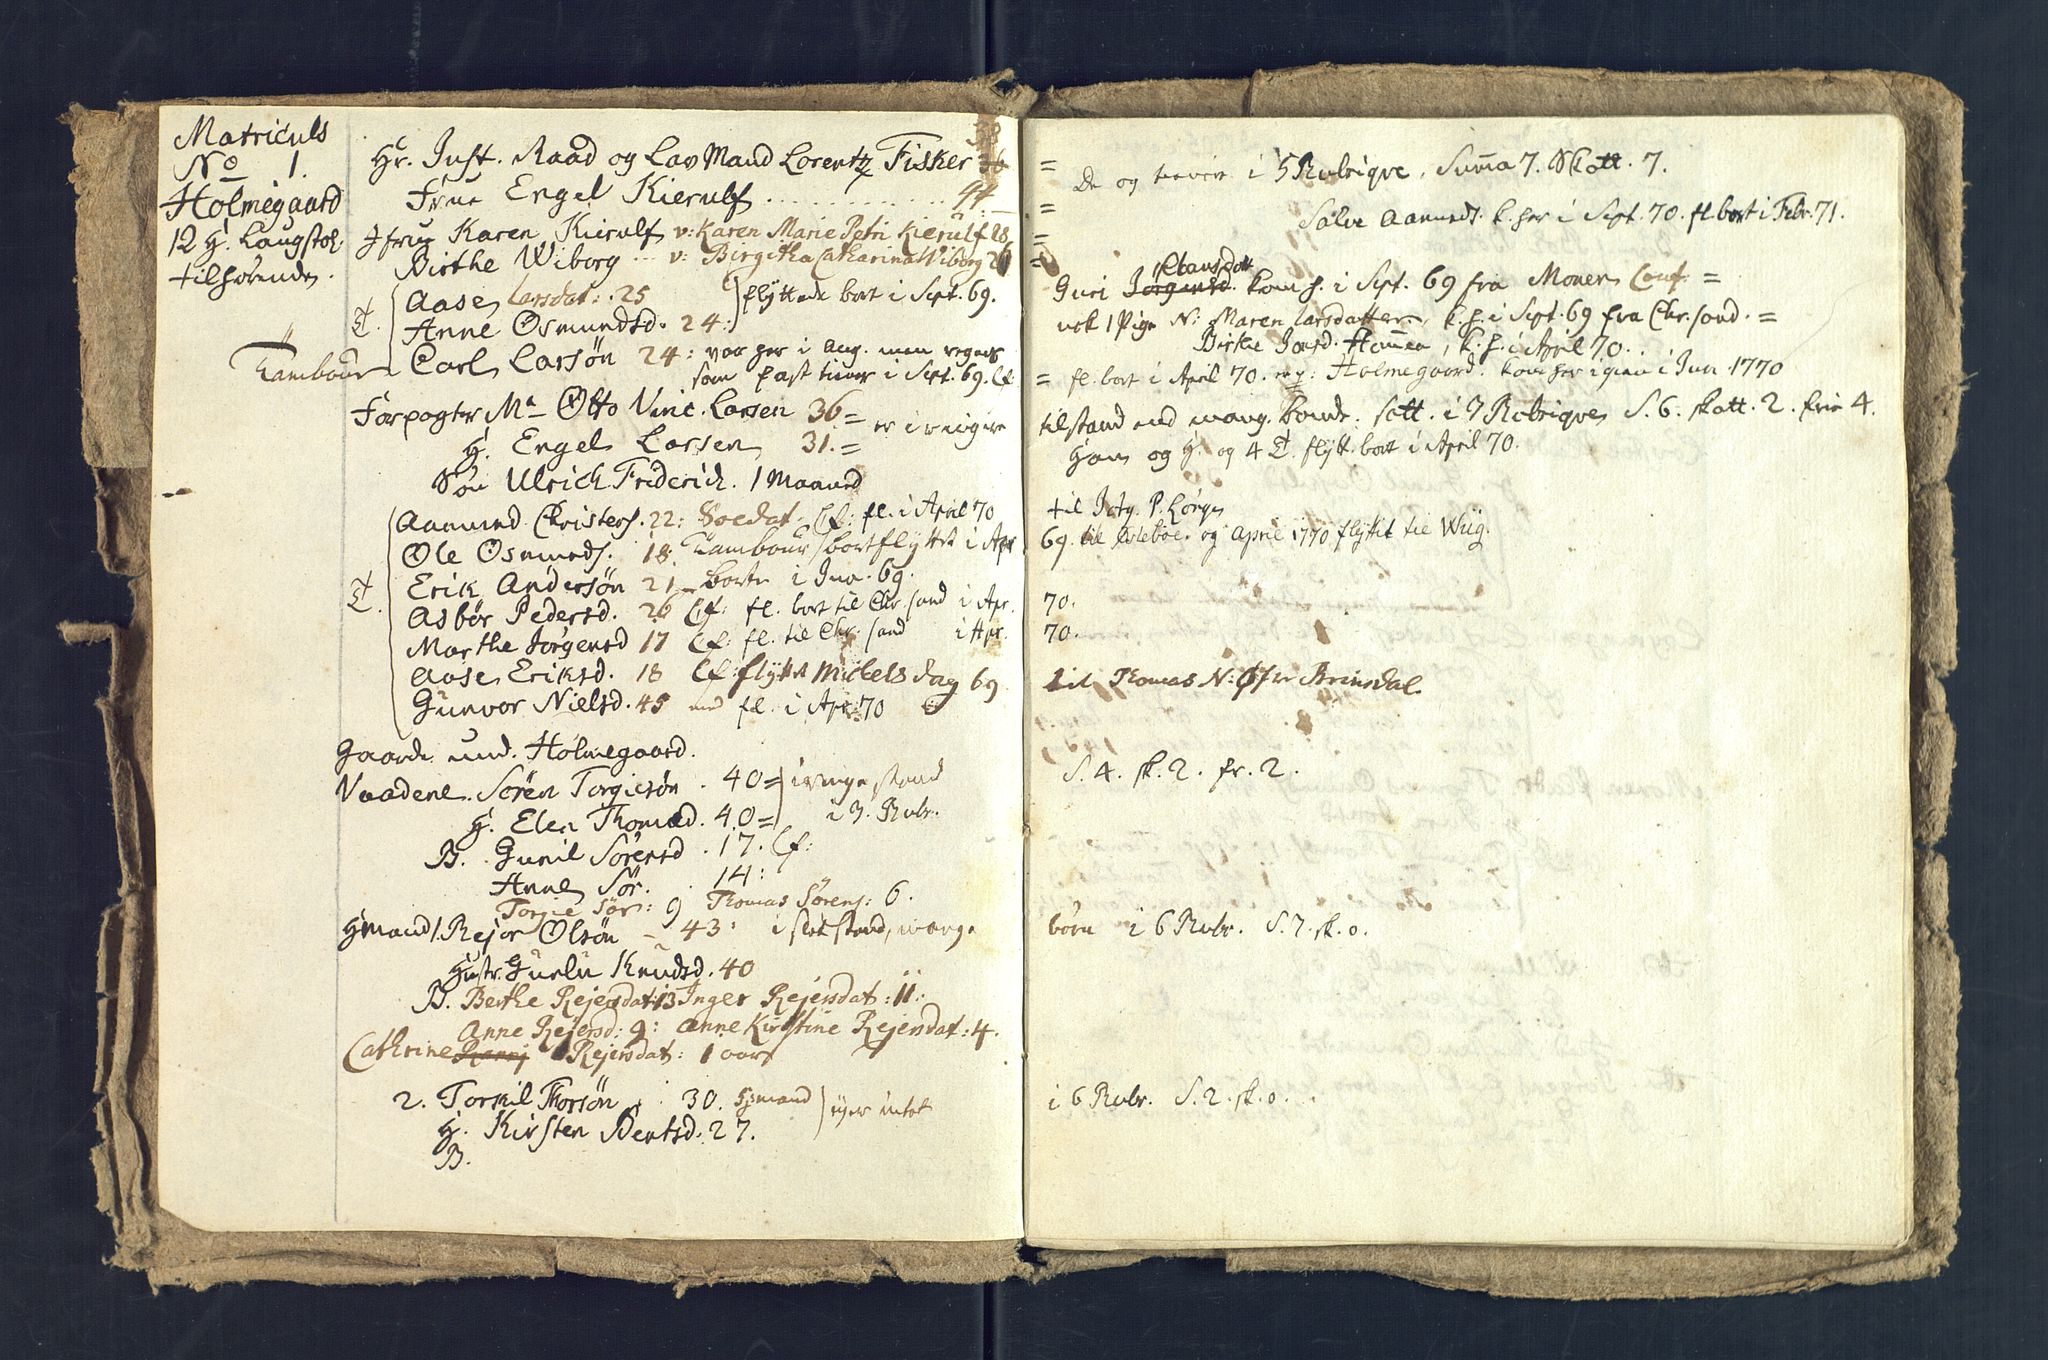 SAK, Holum sokneprestkontor, Andre øvrighetsfunksjoner, no. 5: Census for Holum local parish 1769, 1769-1771, p. 3